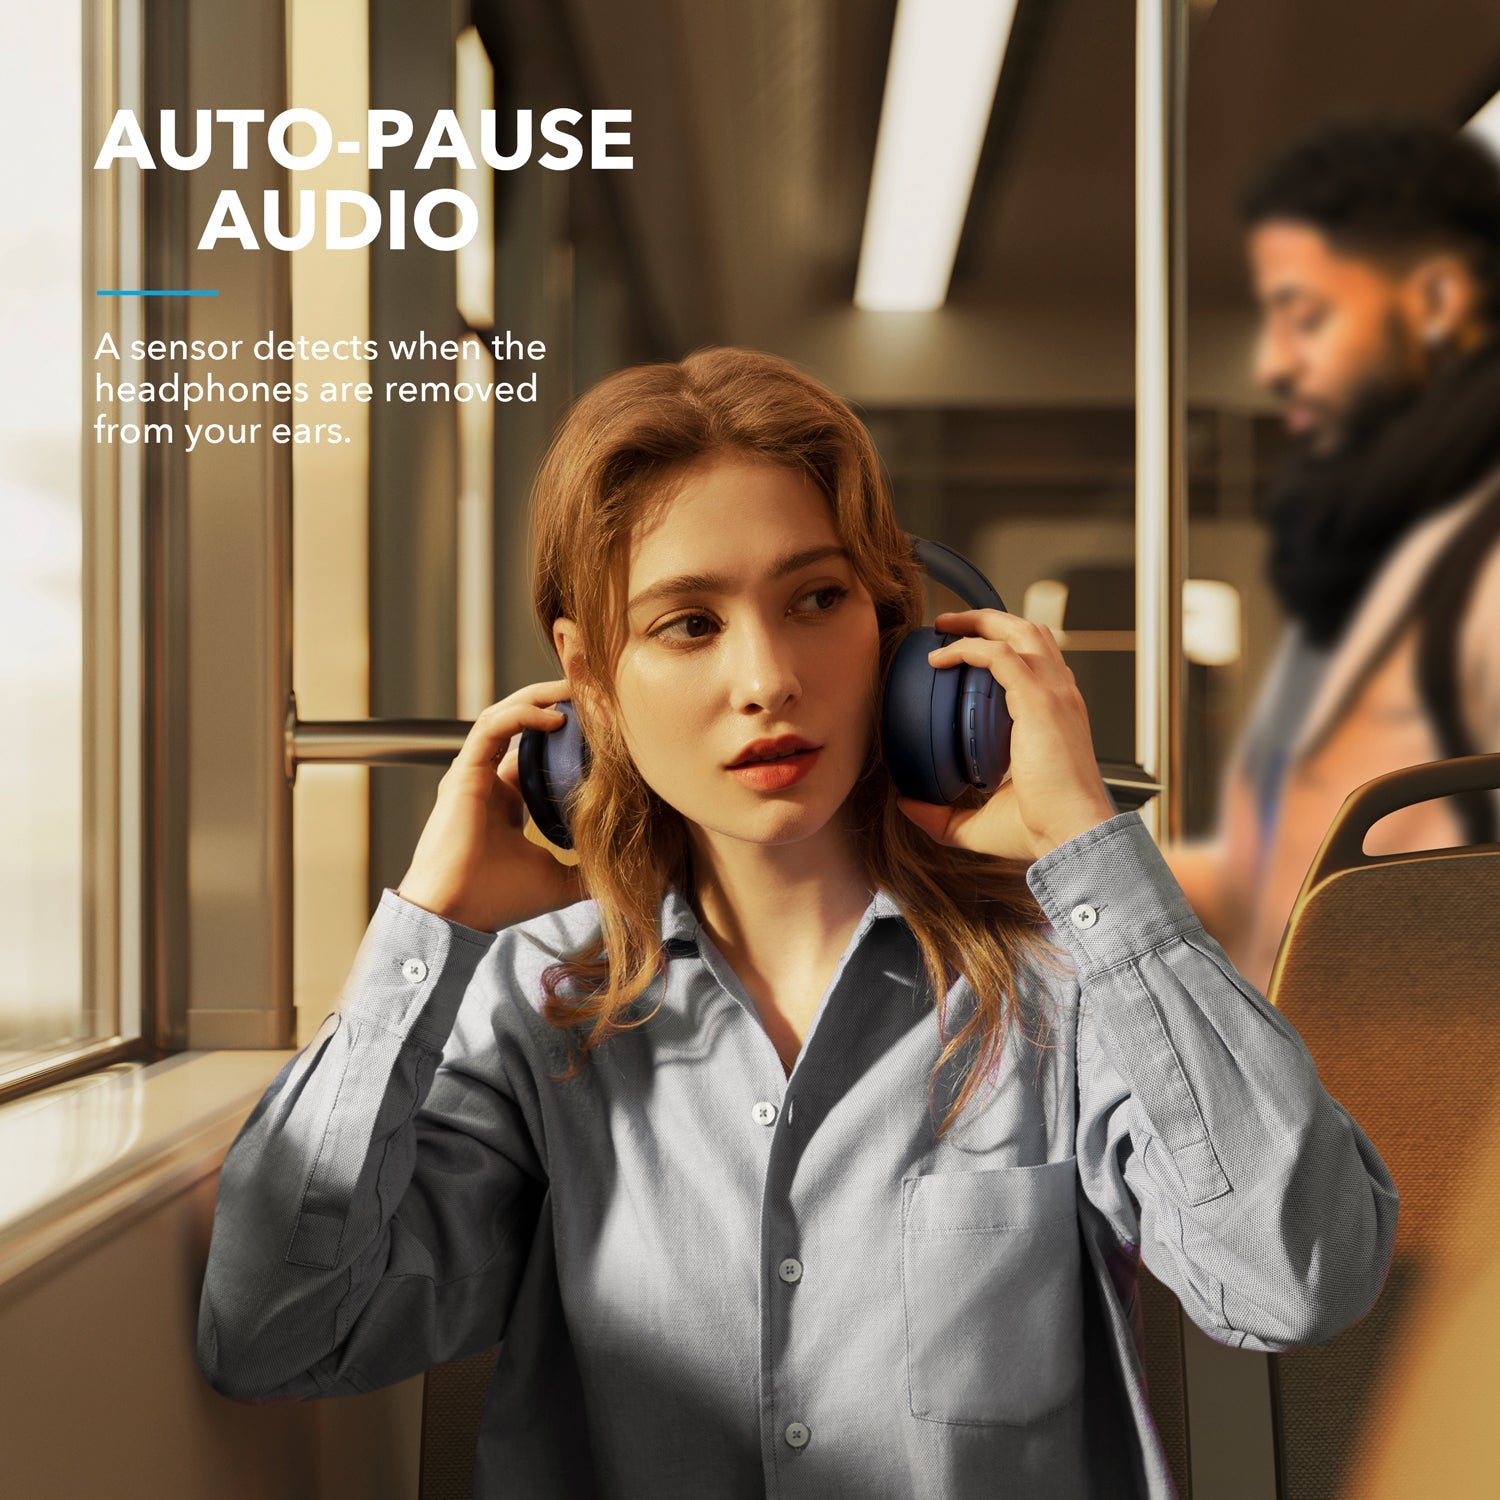 Soundcore by Anker Life Q35 Auriculares con cancelación activa de ruido  multimodo, auriculares Bluetooth con LDAC para audio inalámbrico de alta